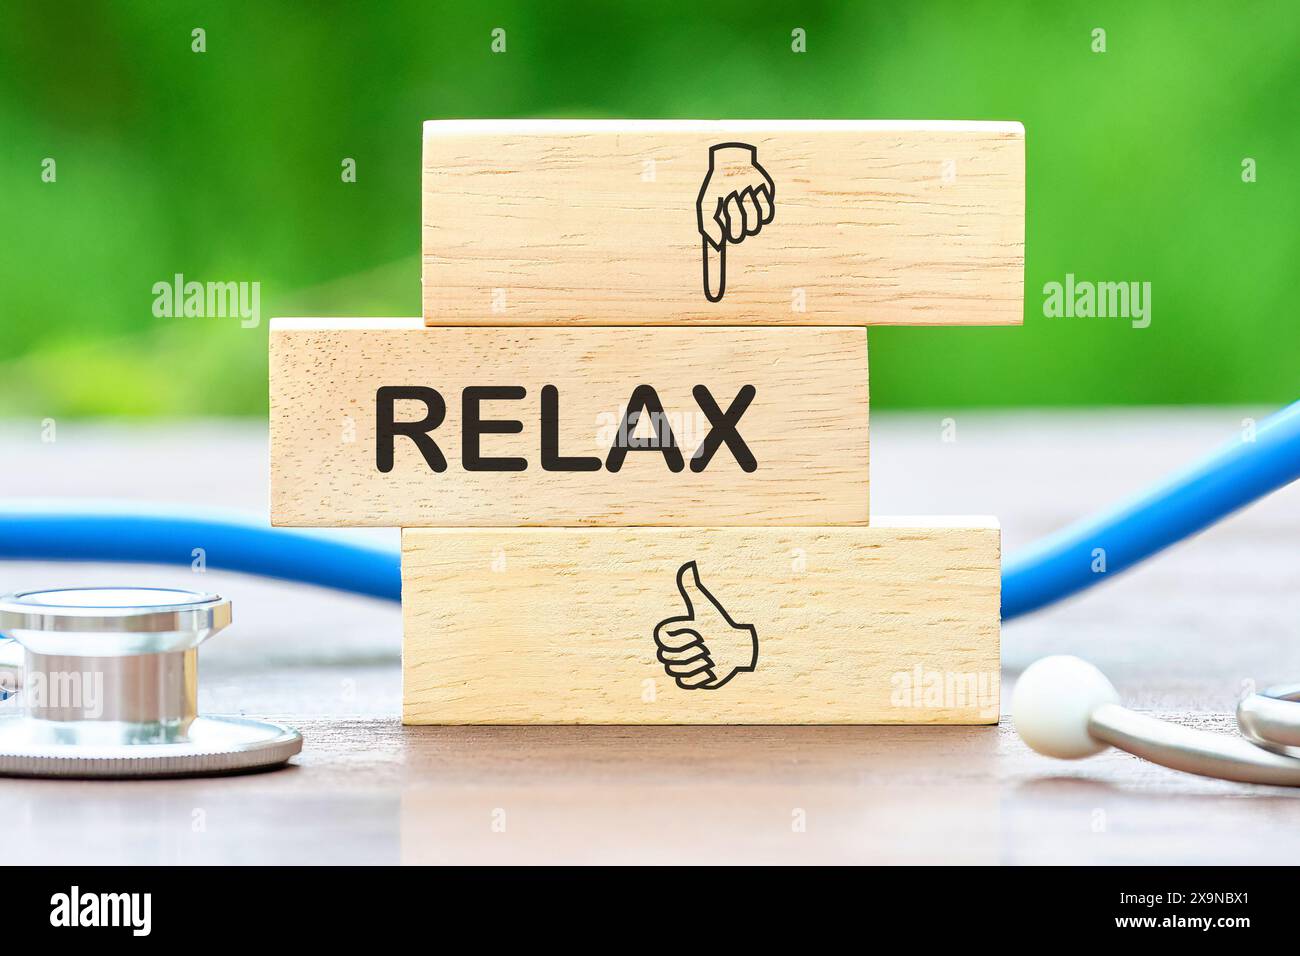 Entspannungskonzept für Spa oder Gesundheit. Relax-Textwort auf Holzstäben neben dem Stethoskop Stockfoto